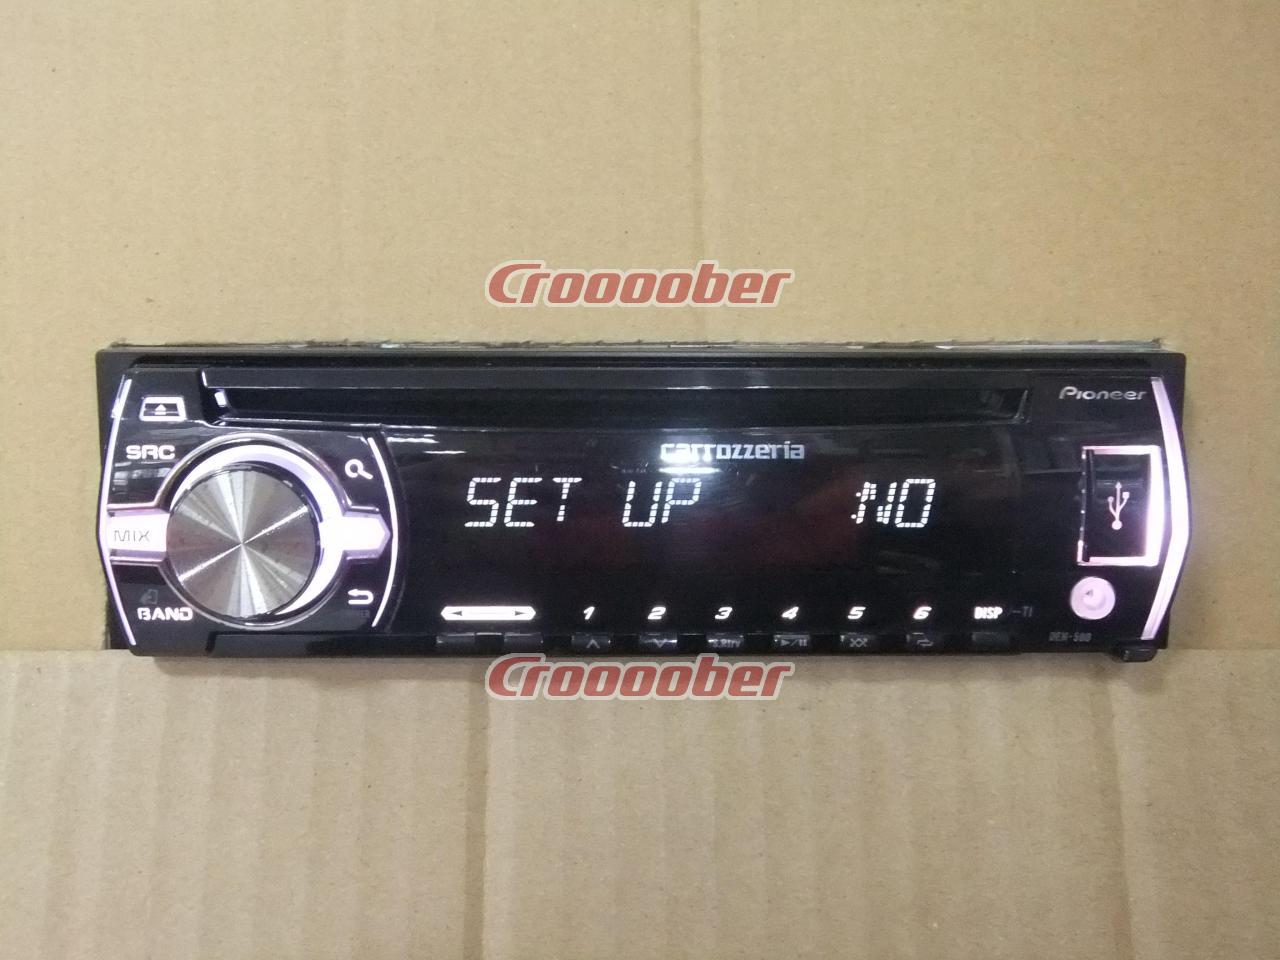 美品 carrozzeria DEH-580 CD USB AUX ラジオ - カーオーディオ